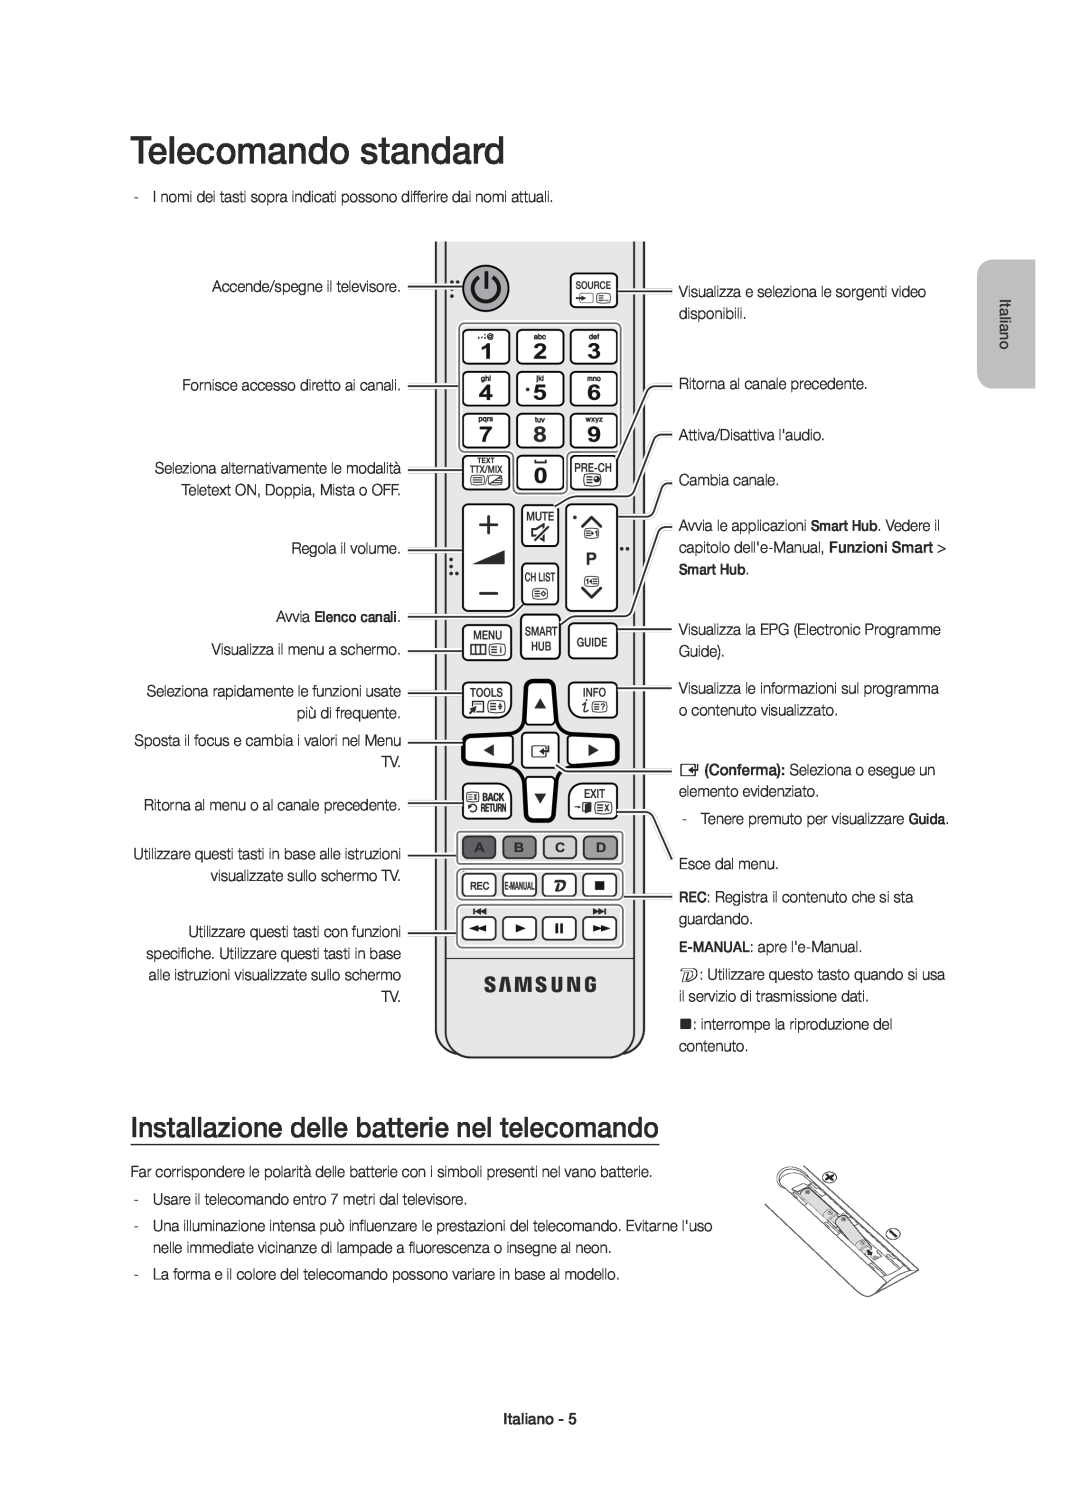 Samsung UE65JU7500TXXC, UE48JU7500TXXC, UE55JU7500TXZF Telecomando standard, Installazione delle batterie nel telecomando 